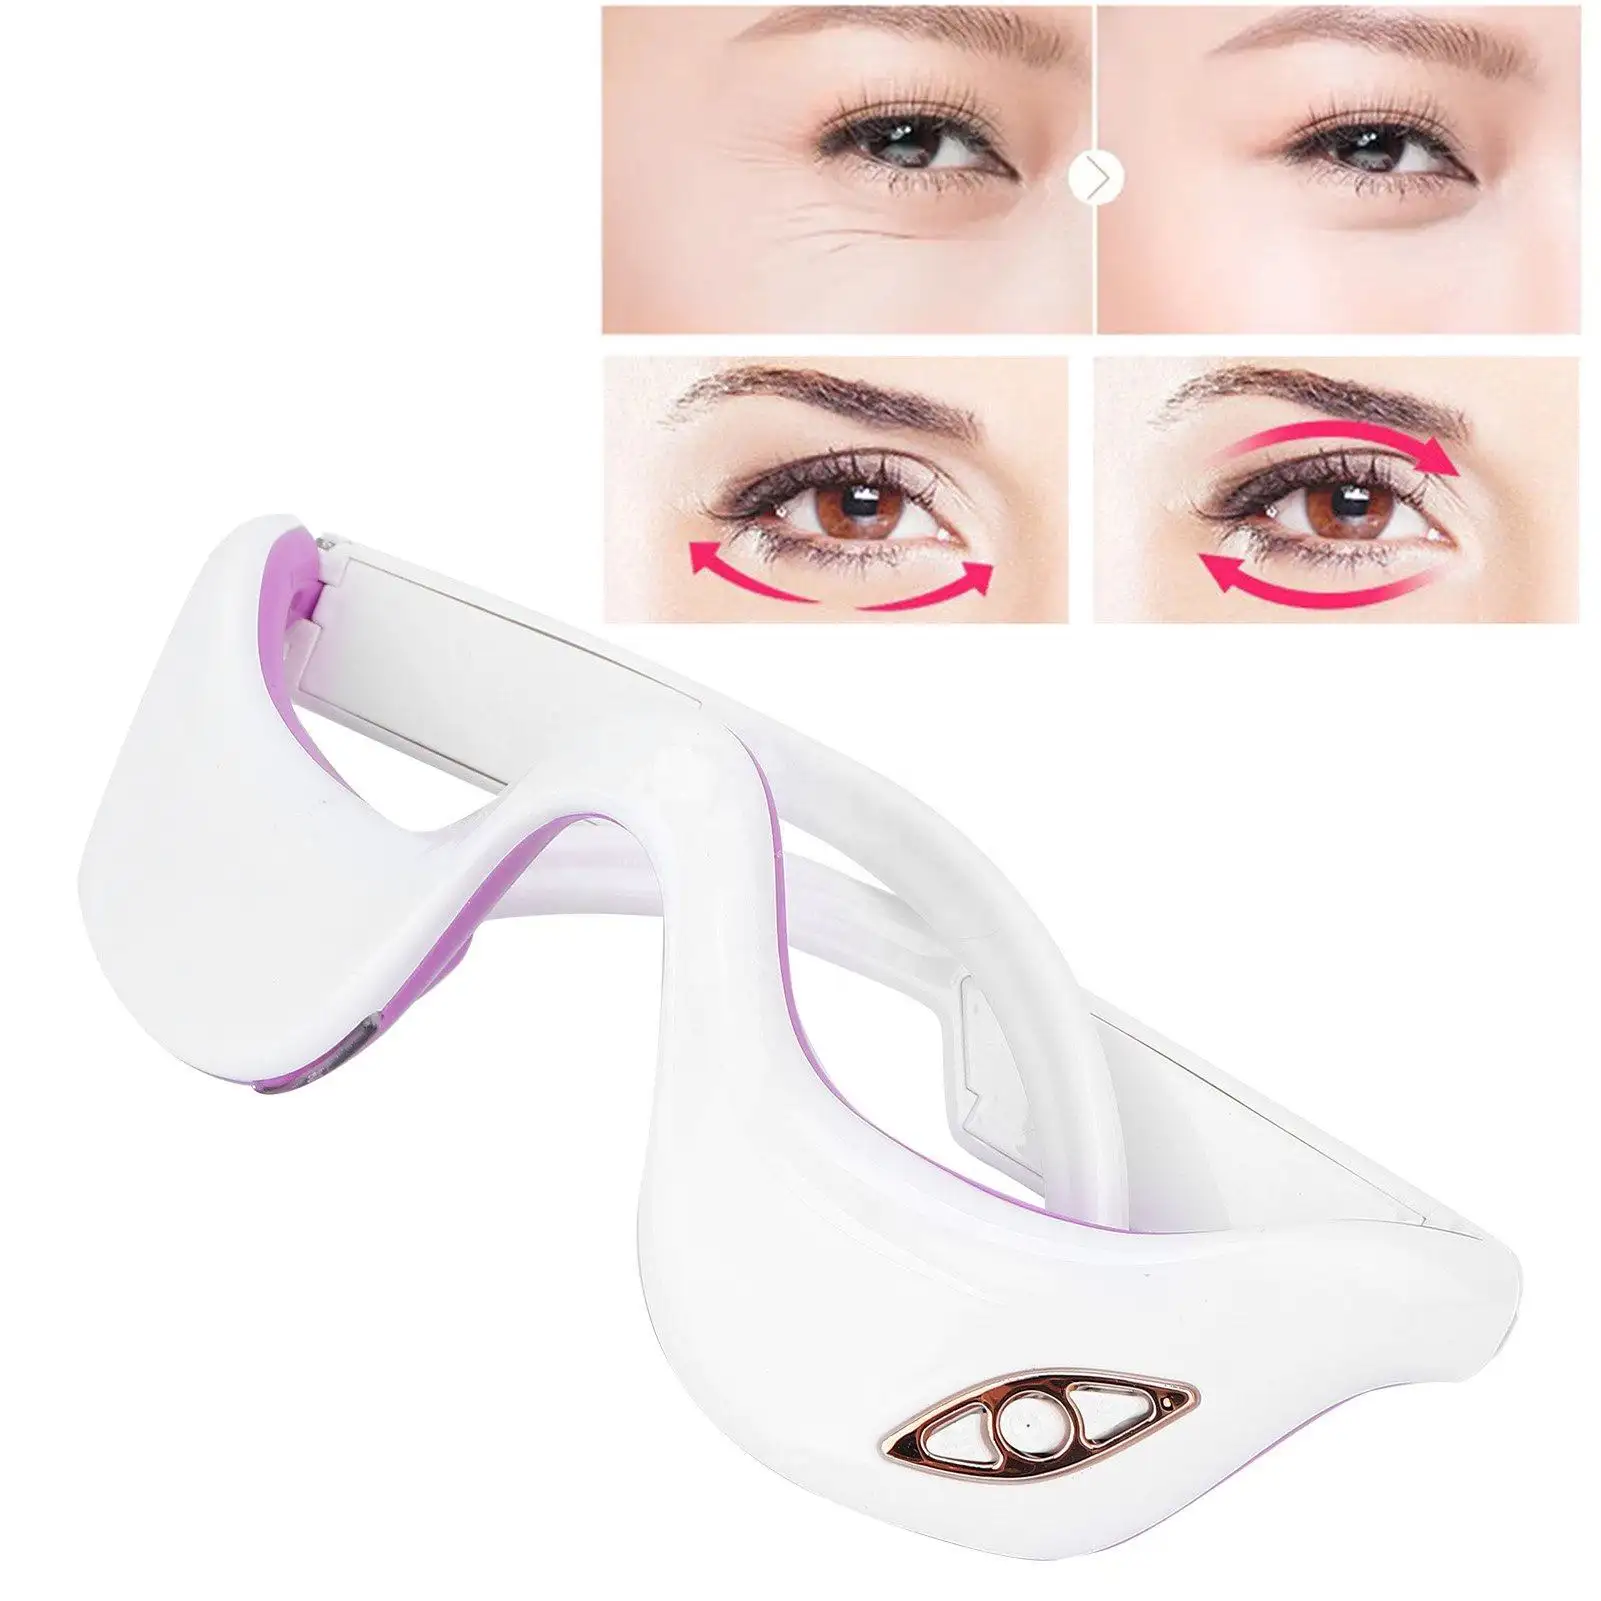 2023 новый продукт 4D аппарат для массажа глаз с нагреванием воздуха, вибрацией, против морщин, беспроводной расслабляющий массаж глаз